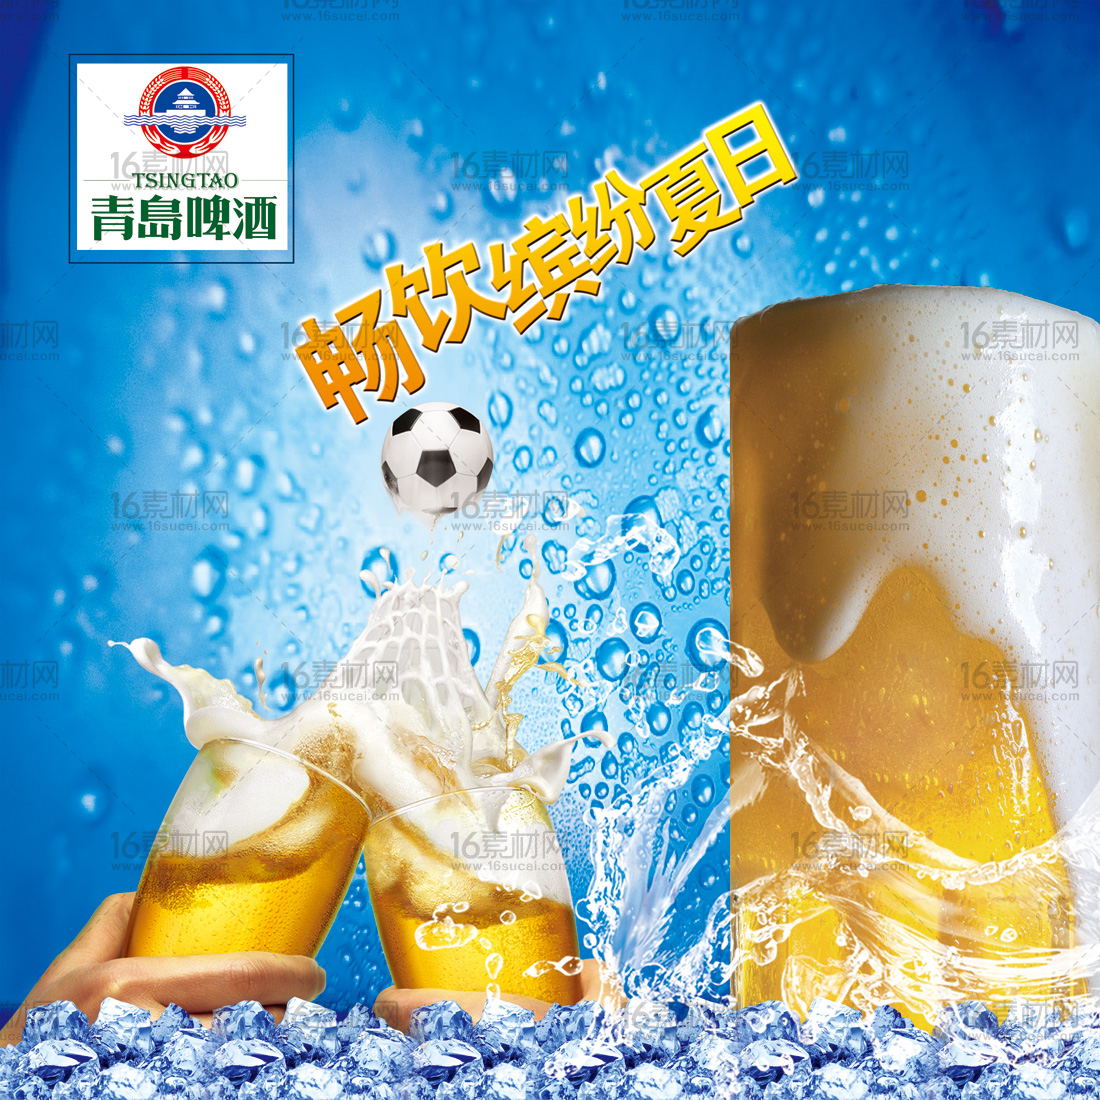 蓝色冰爽青岛啤酒宣传海报psd分层素材